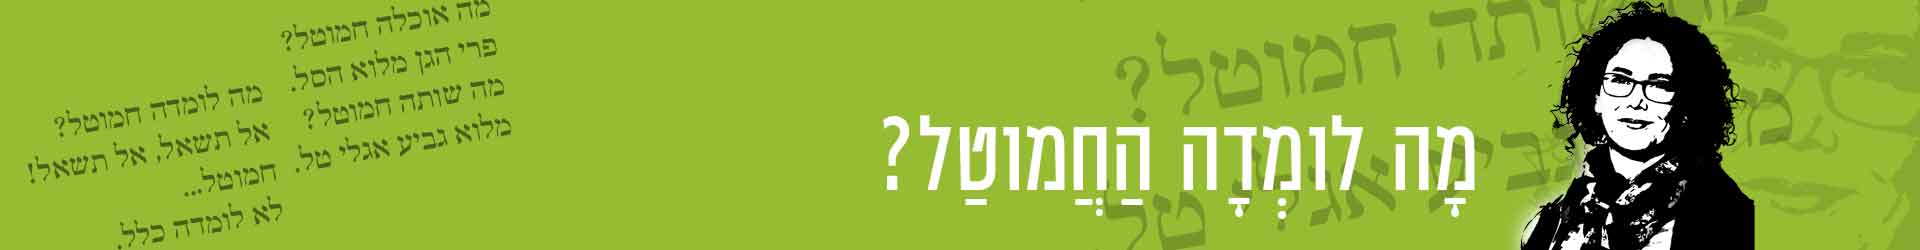 קורס בניה ירוקה מ.א.מגילות ואיגוד ערים יהודה – פגישה 7: גינון מדברי